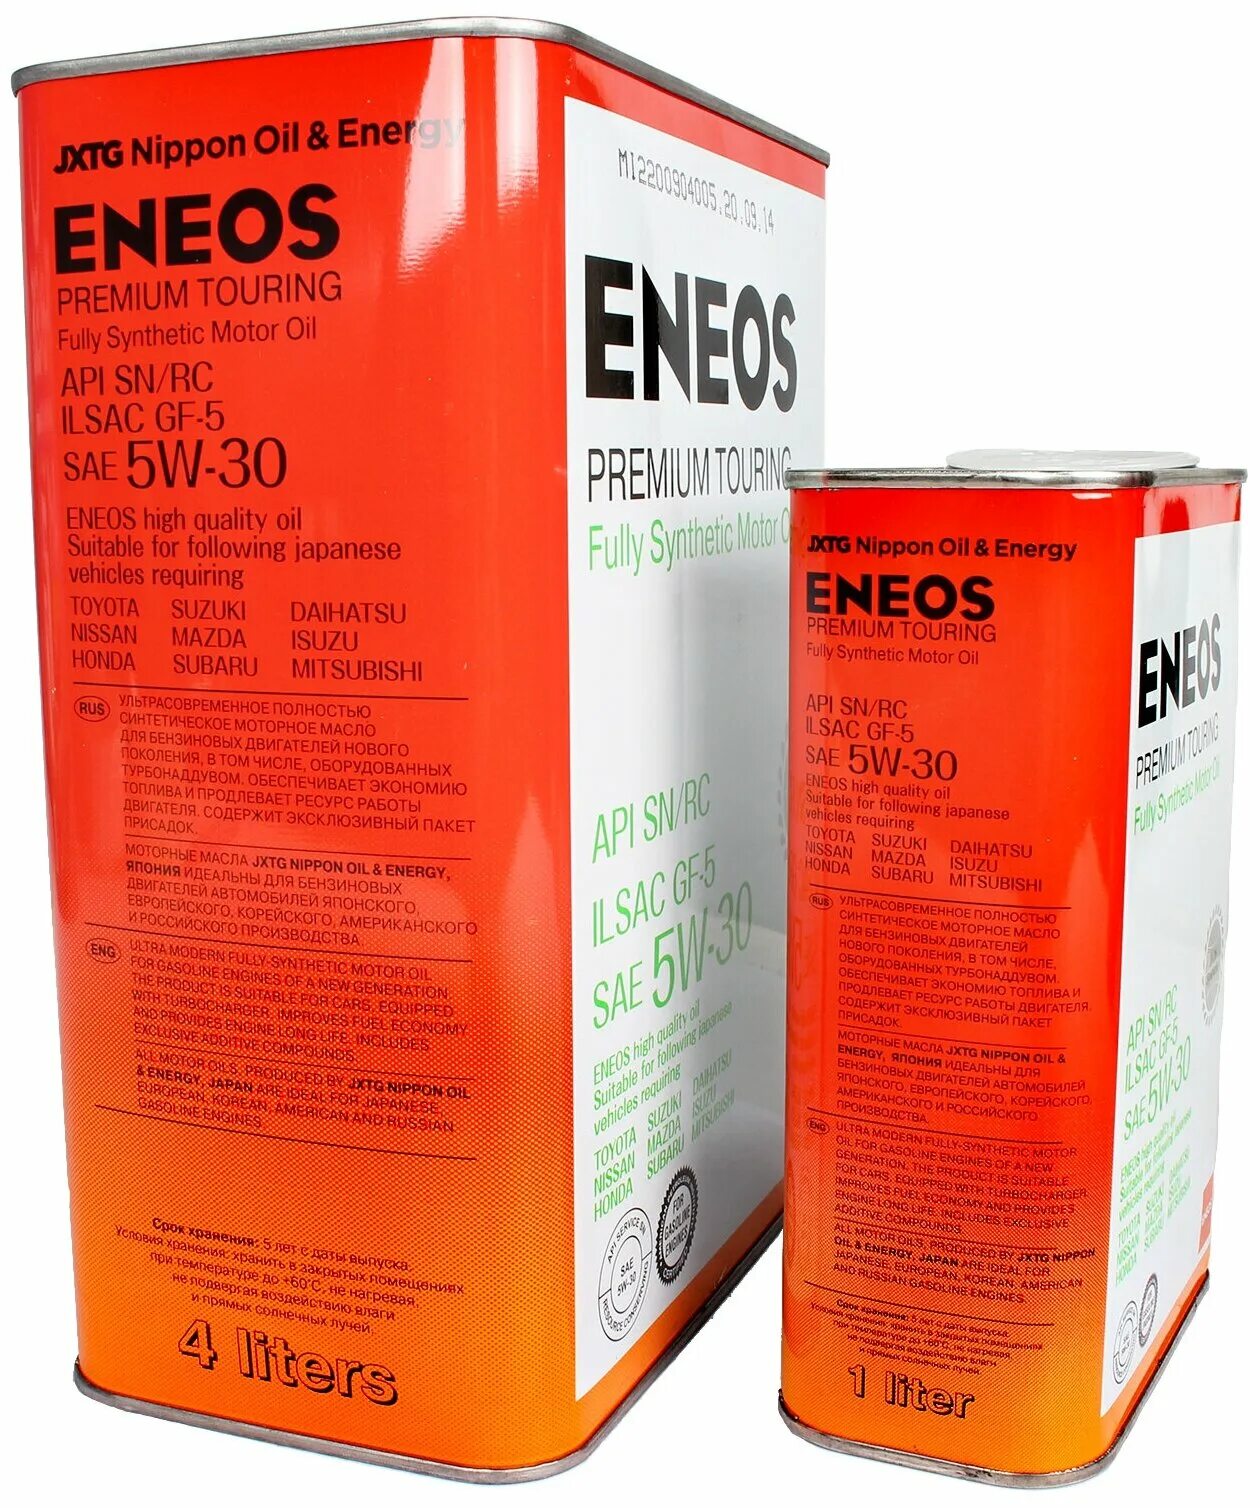 Eneos 5w30 touring. ENEOS Premium Touring SN 5w-30. ENEOS Premium Touring SN/RC 5w30. 8809478942216 ENEOS. 8809478942162 ENEOS.